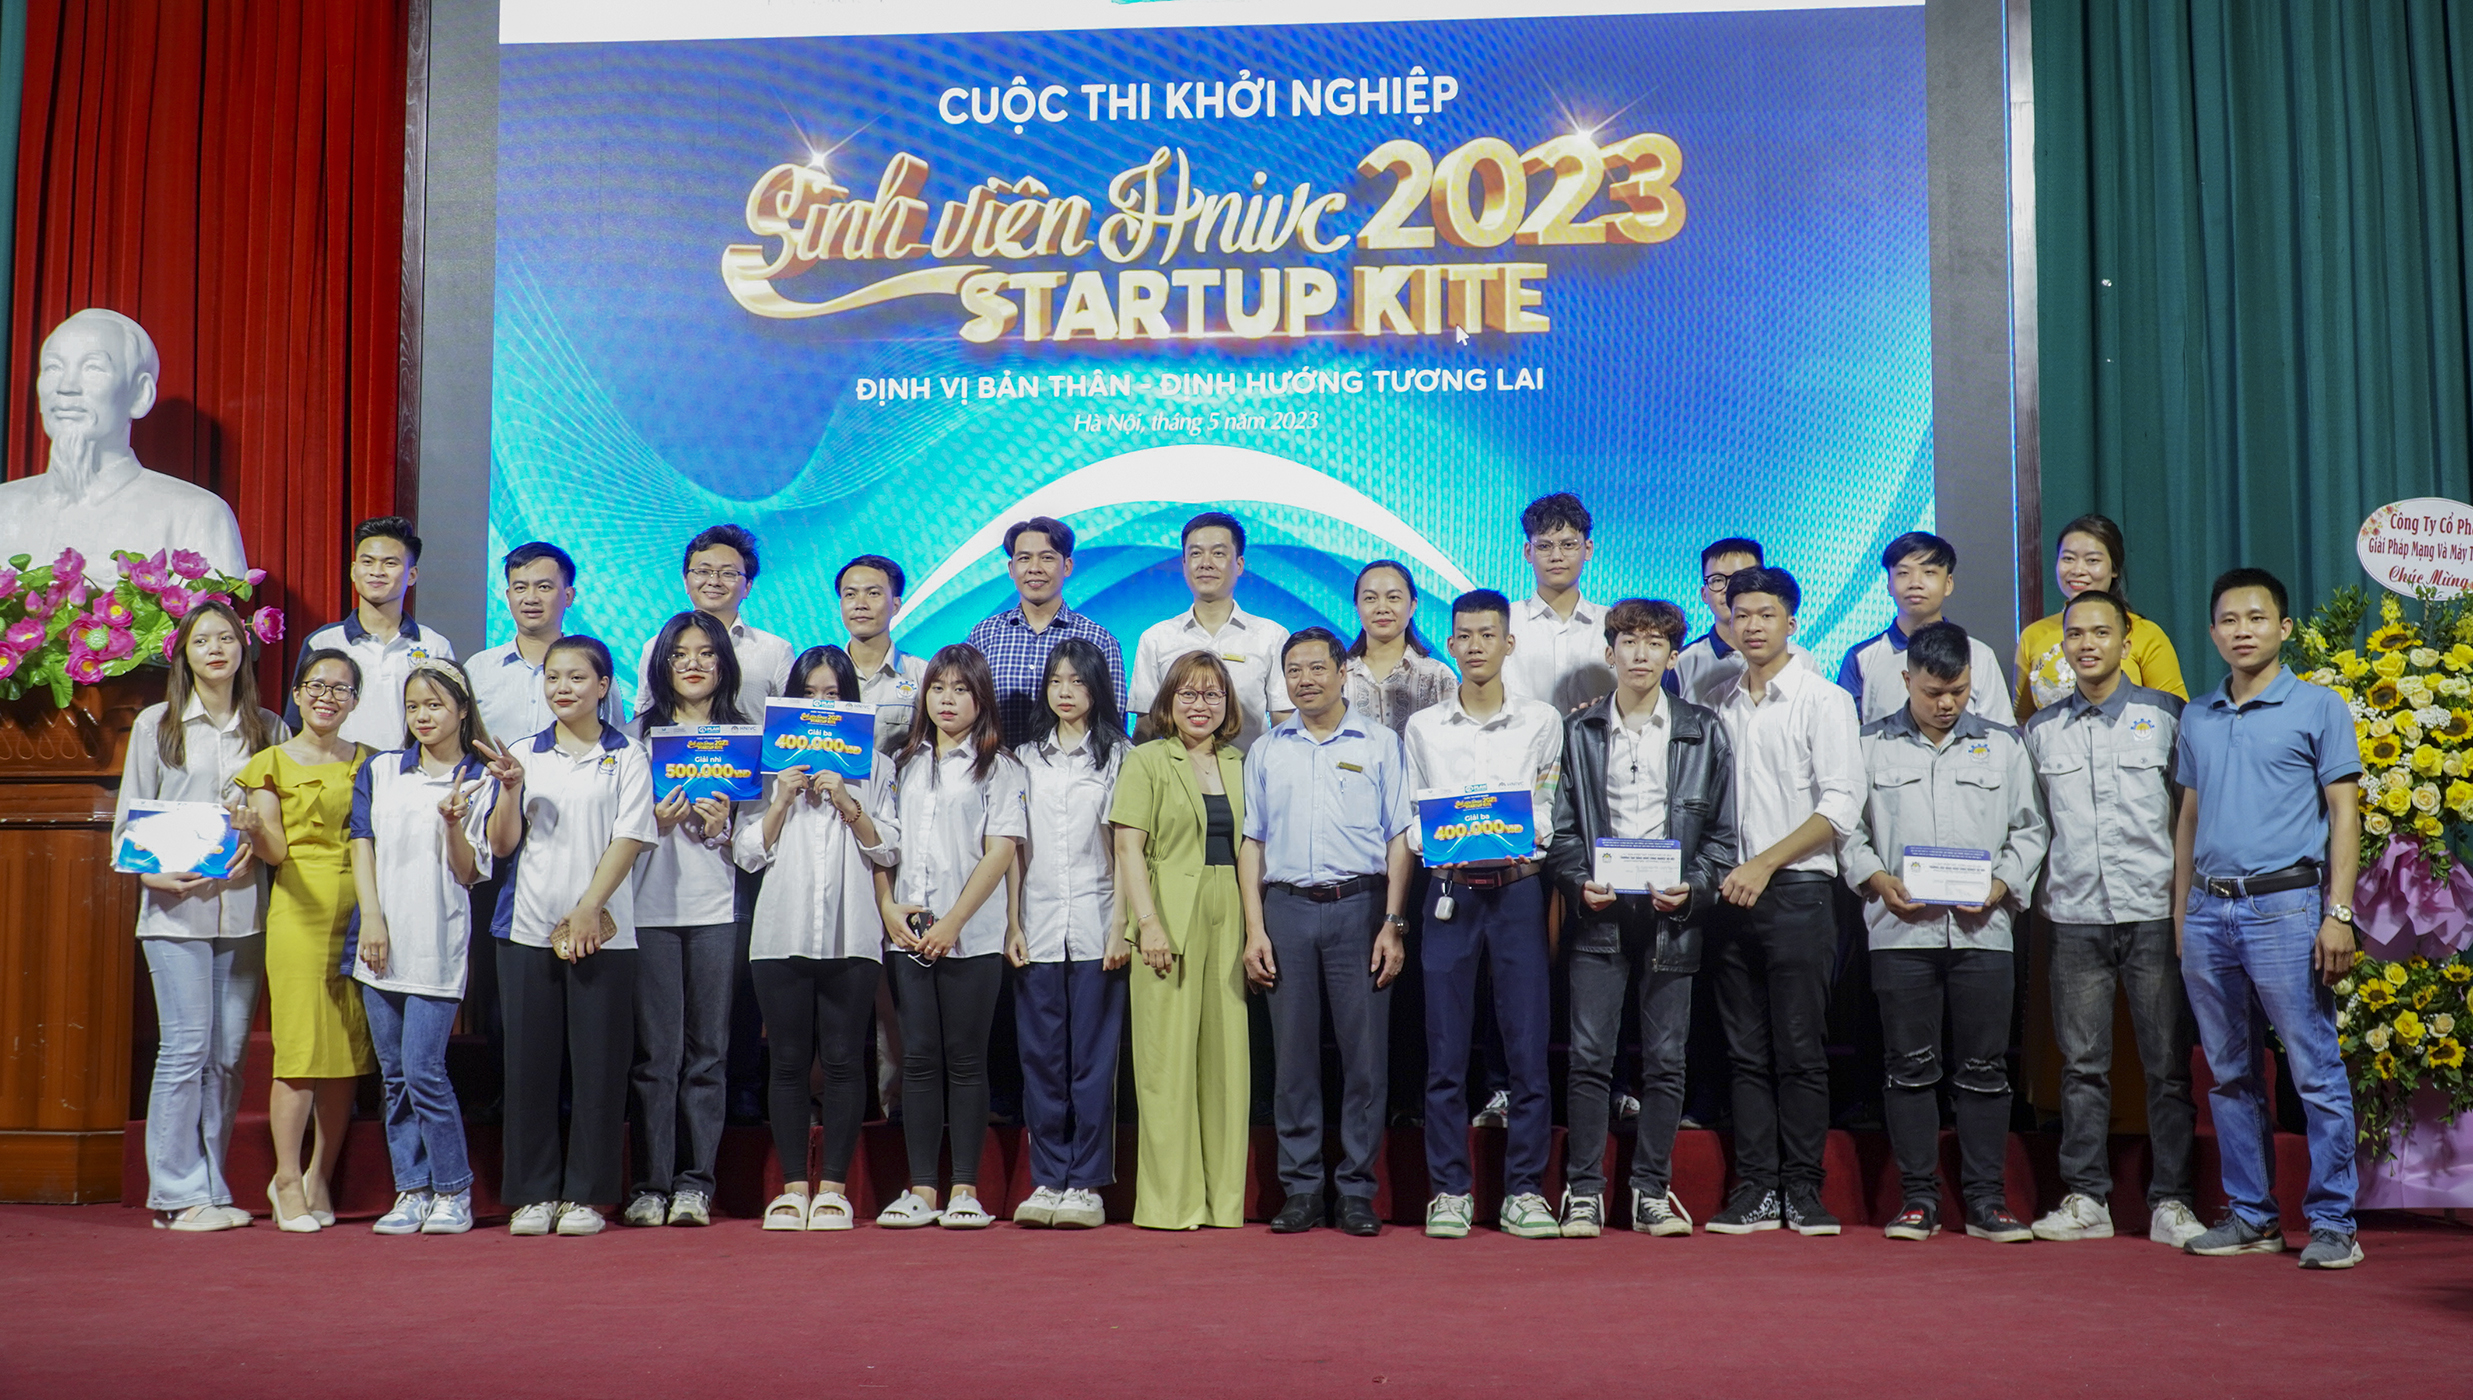 Startup kite hnivc 2023: định vị bản thân - định hướng tương lai